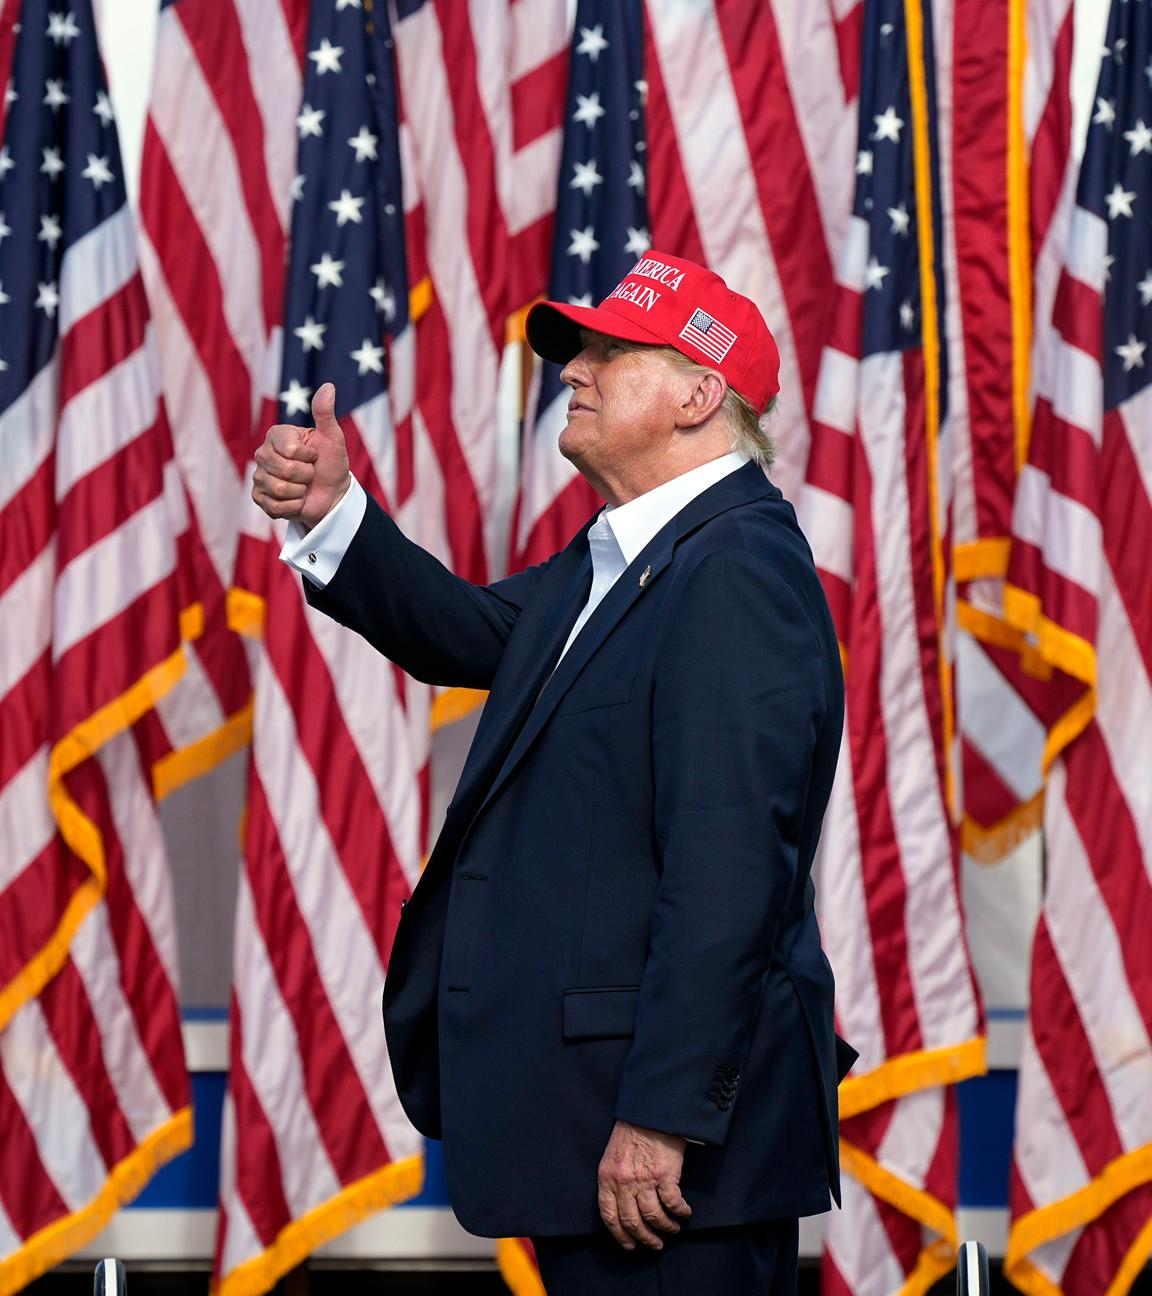 Donald Trump steht vor zahlreichen US-Flaggen